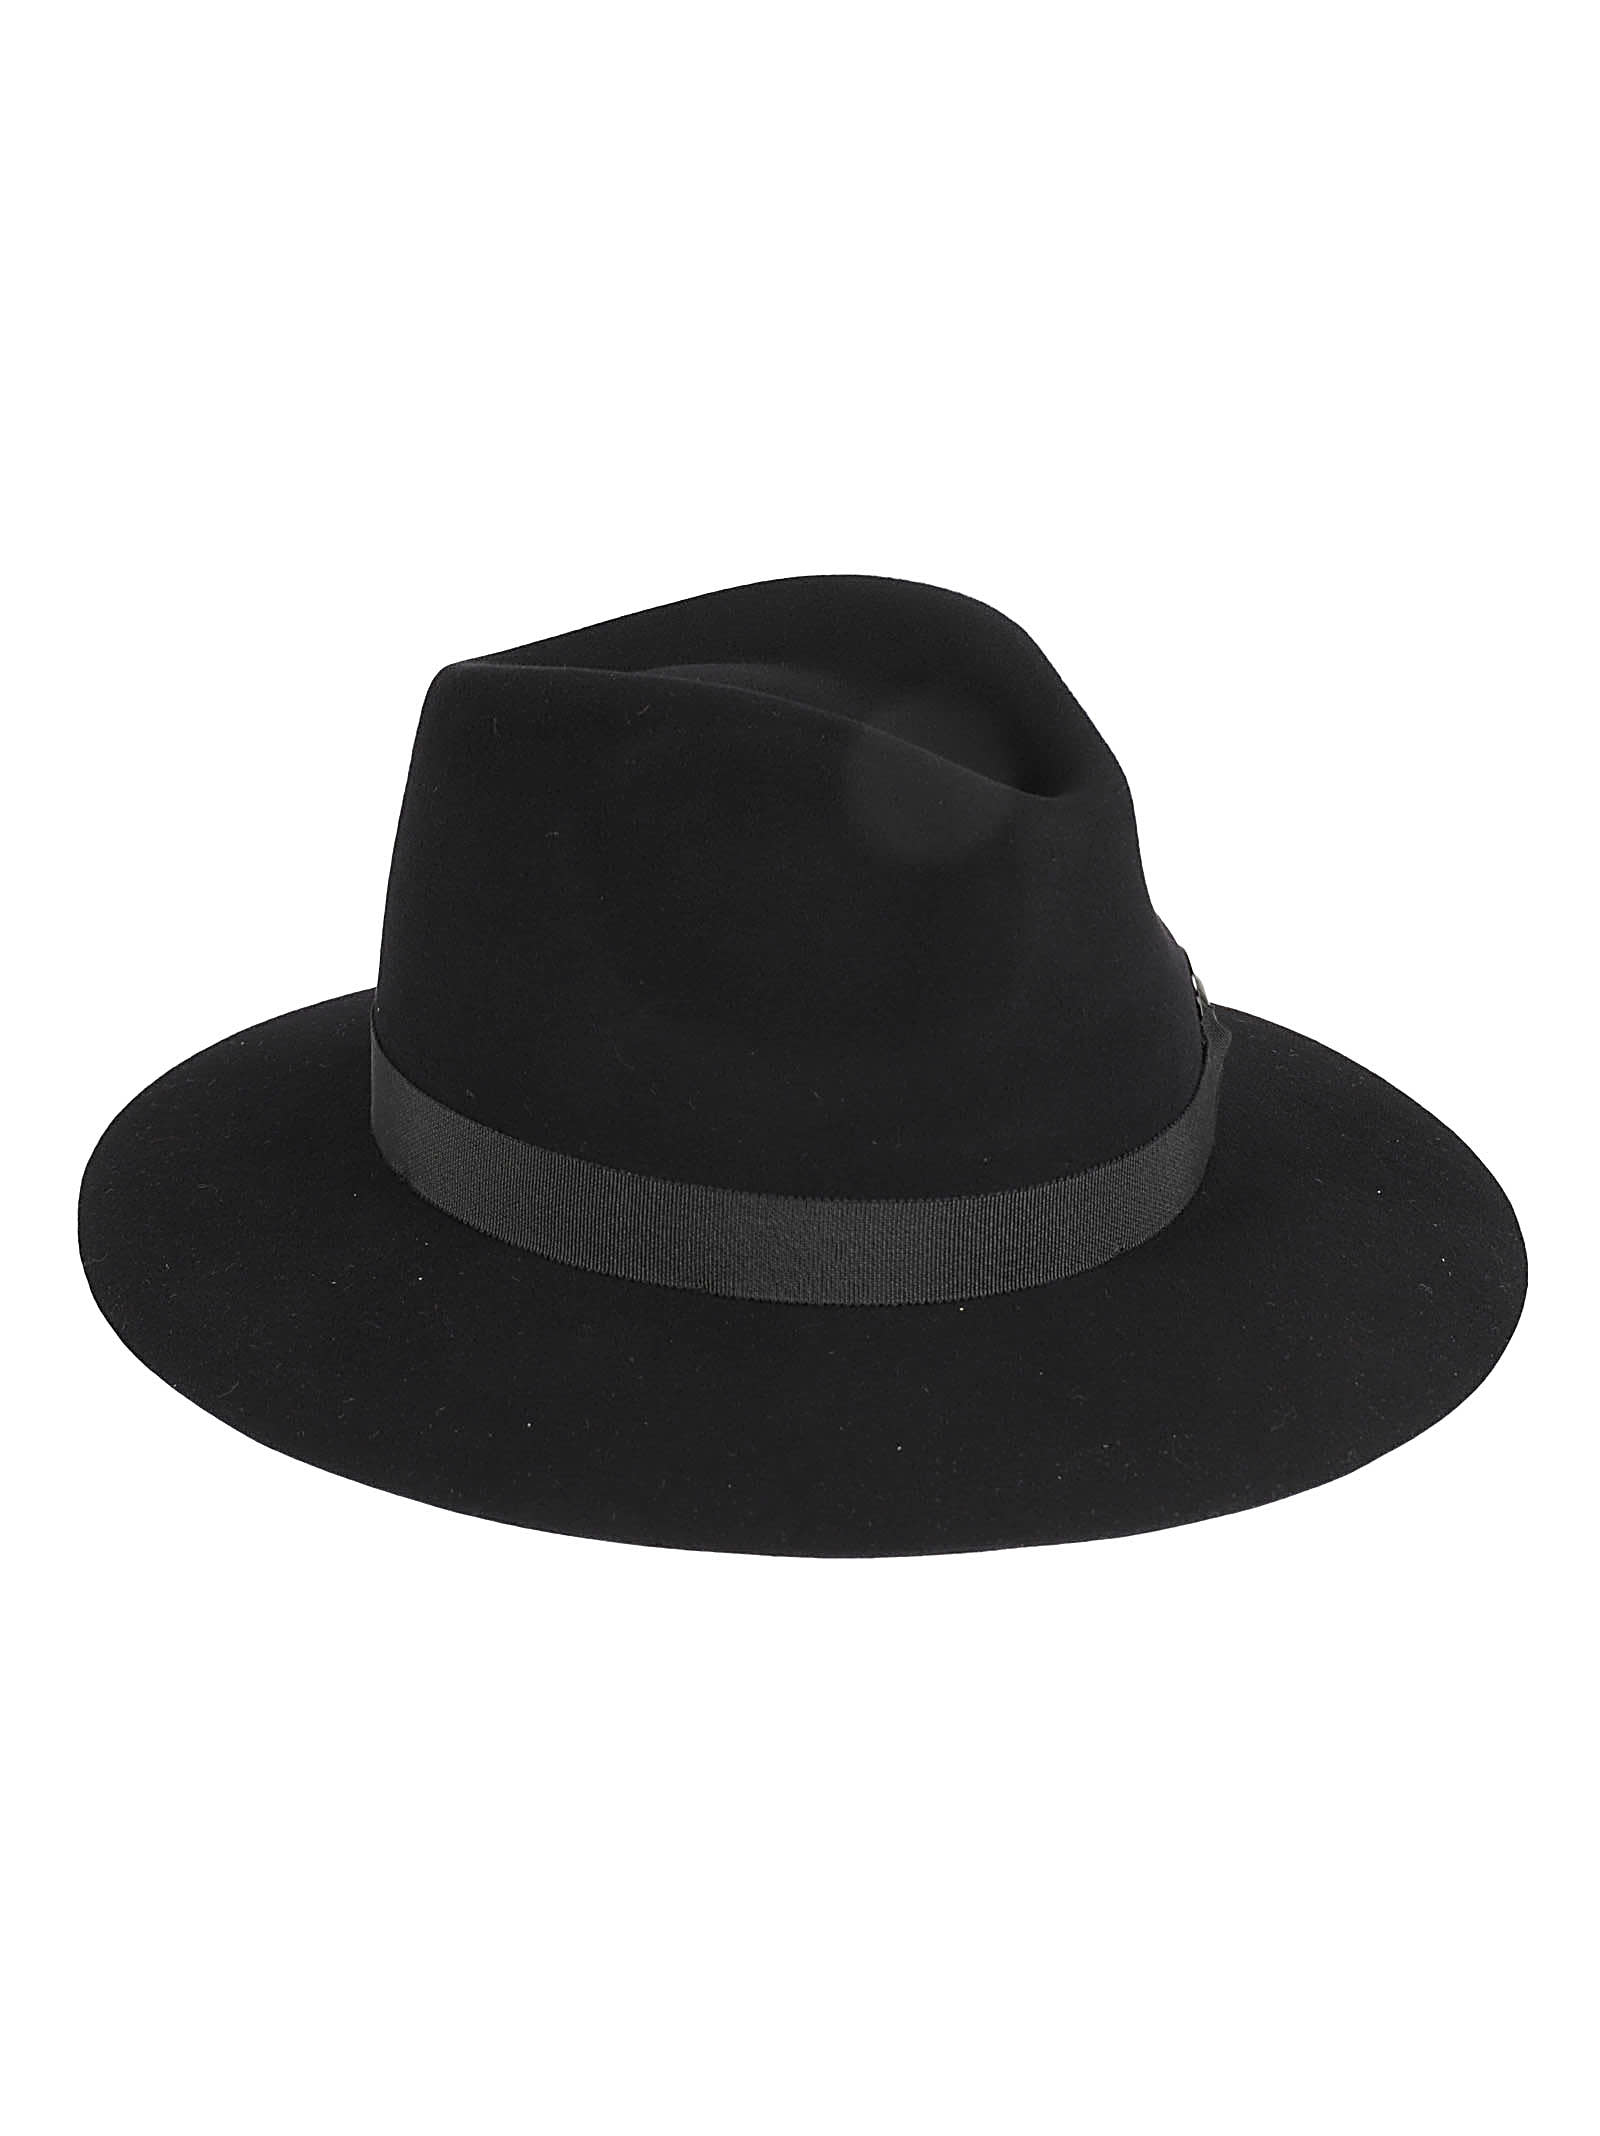 Maison Michel Logo Classic Hat